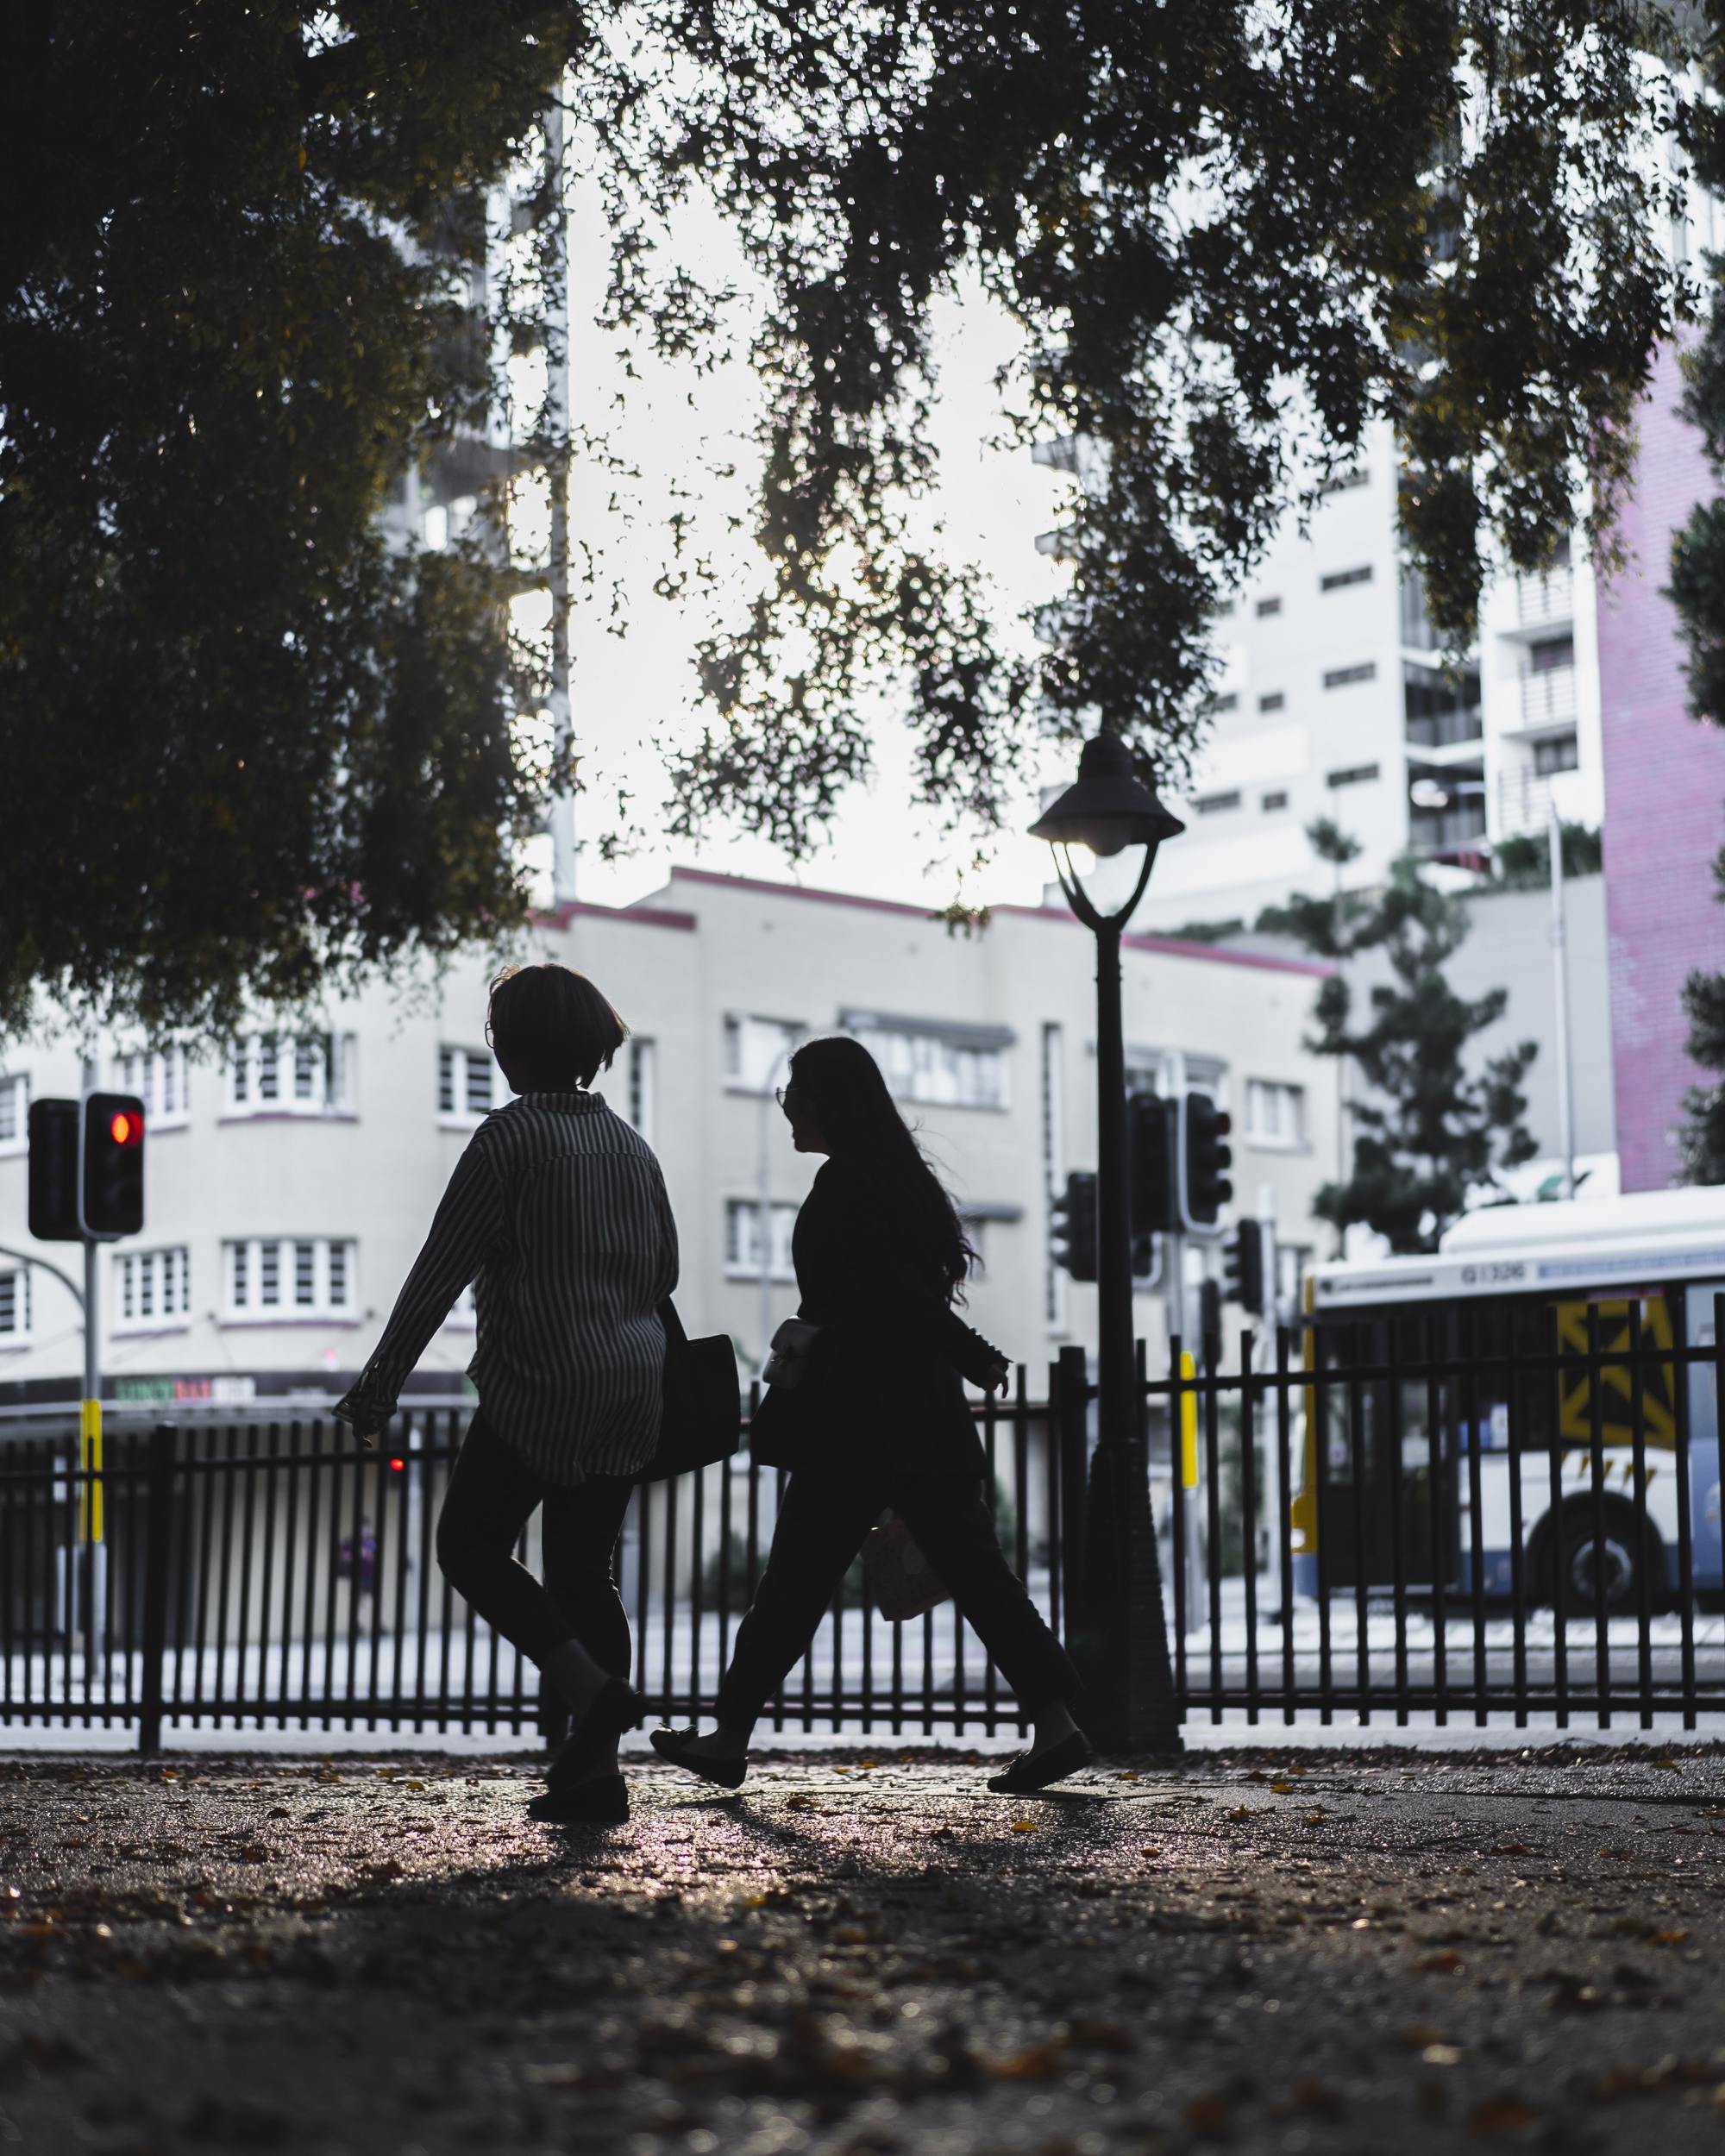 Two pedestrians walking alongside busy road